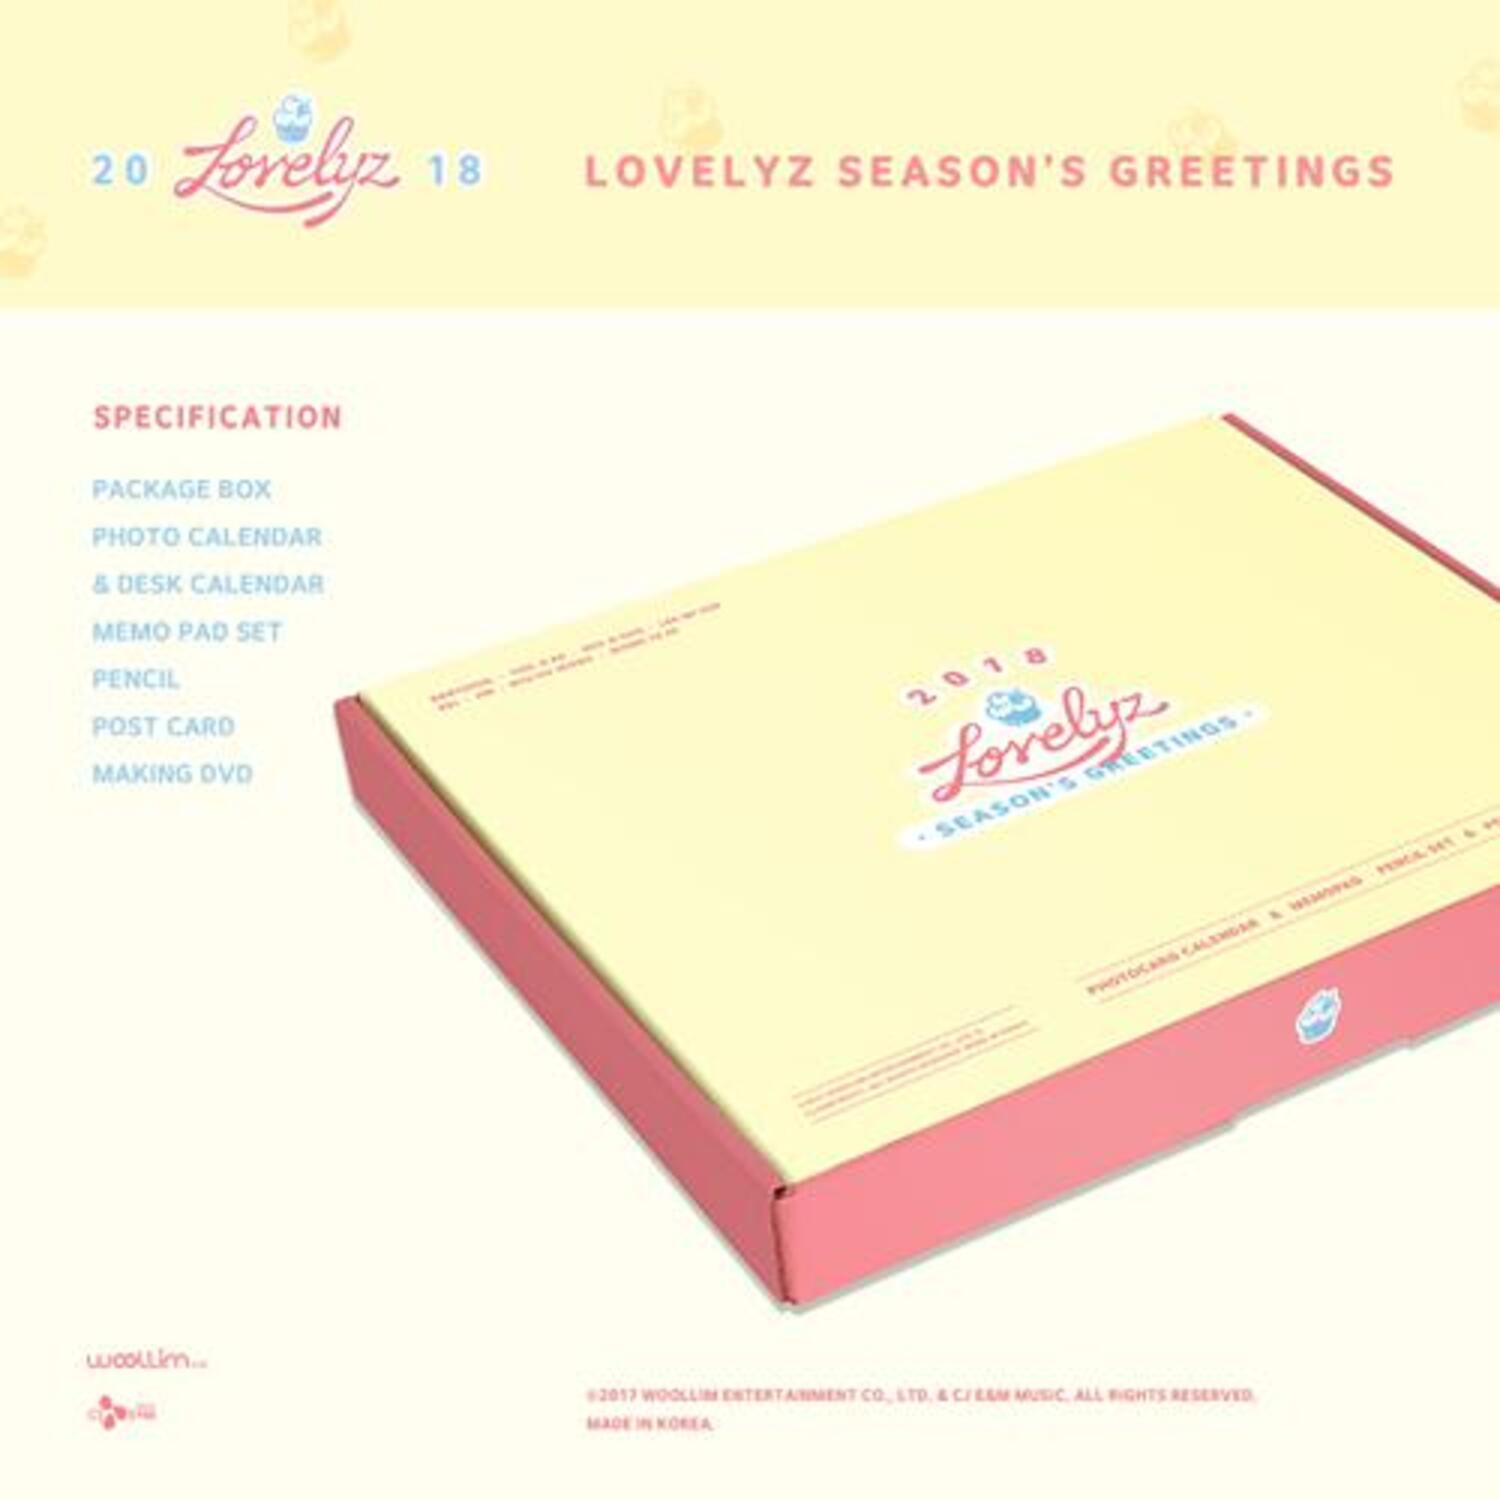 러블리즈(Lovelyz) - 2018 러블리즈 시즌그리팅 (2018 LOVELYZ SEASON’S GREETINGS)